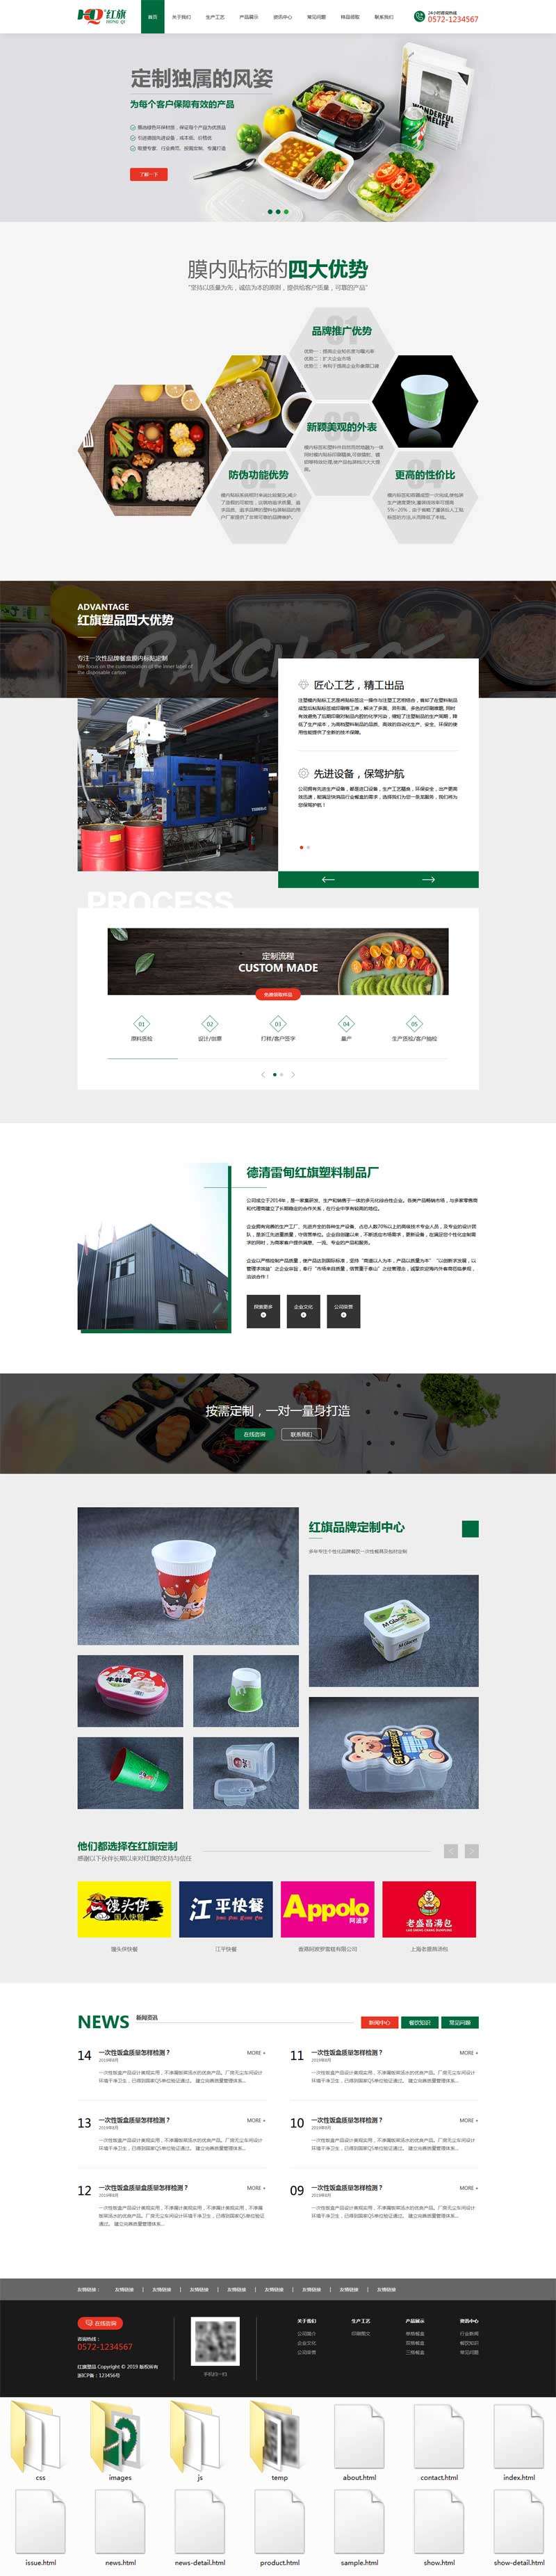 环保的样品包装设计公司网站模板(图1)